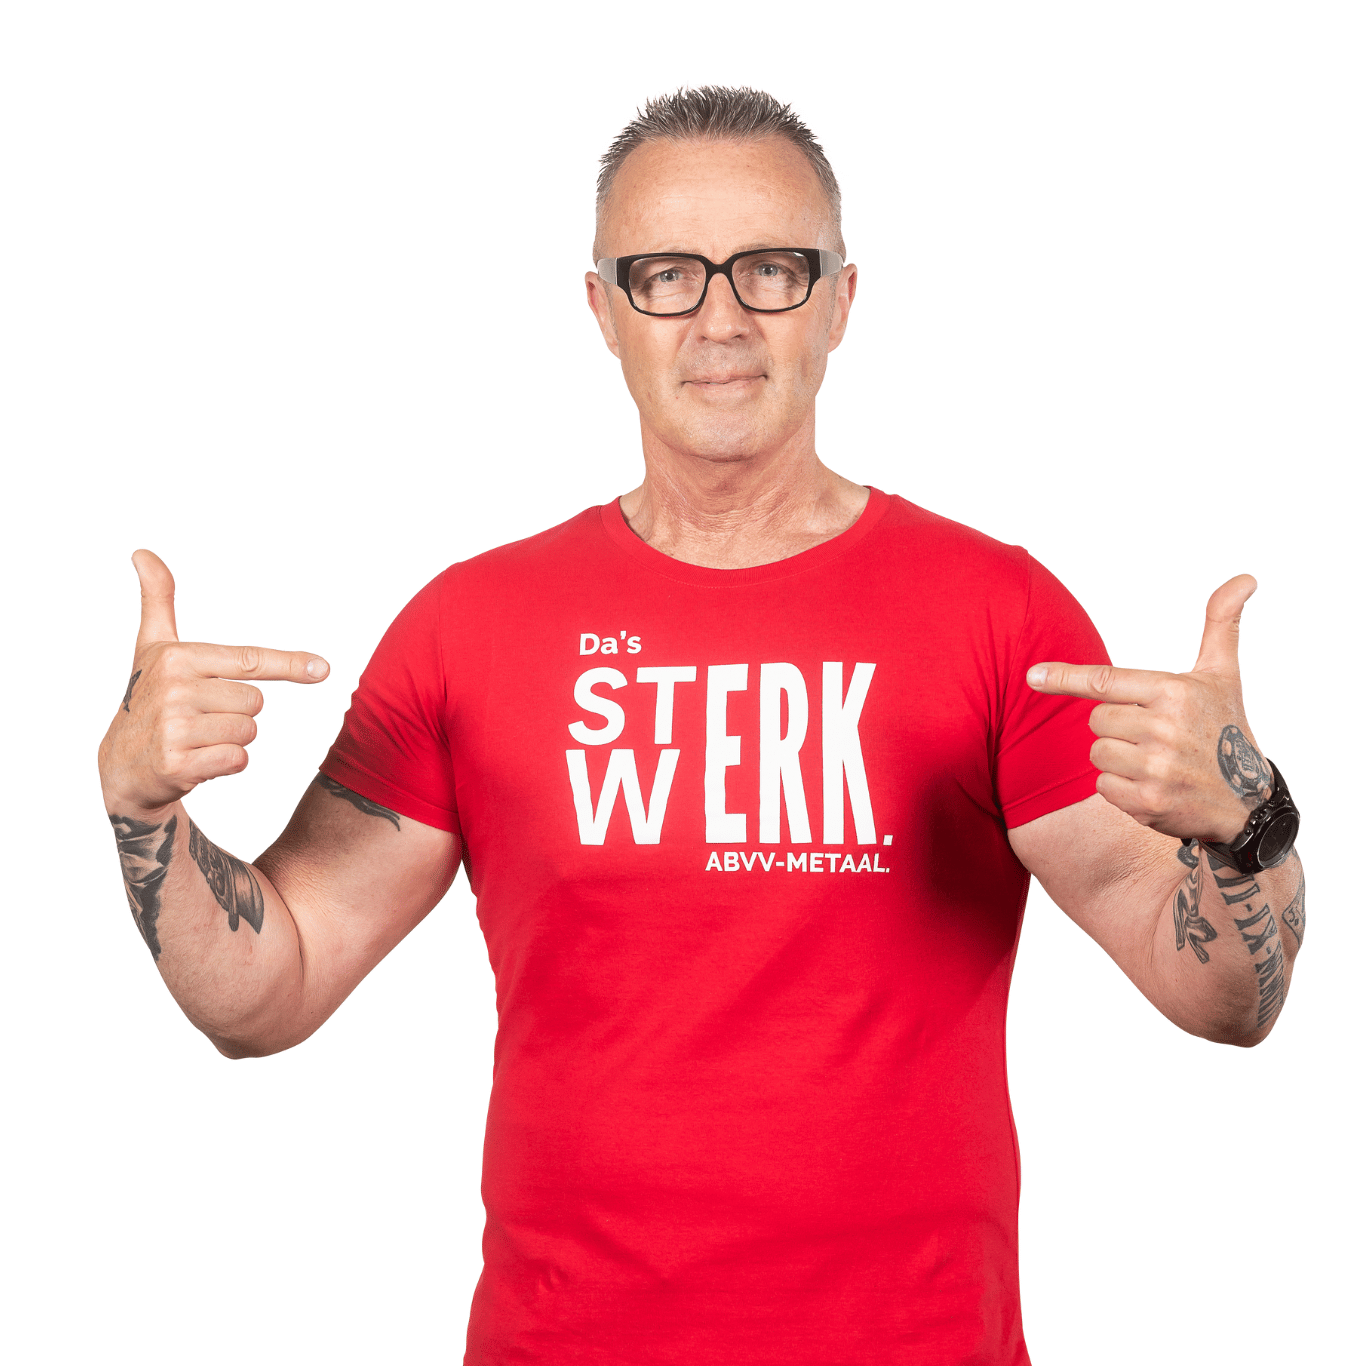 kandidaat van de sociale verkiezingen staat tot zijn middel op de foto met een rood t-shirt terwijl hij wijst met zijn twee vingers